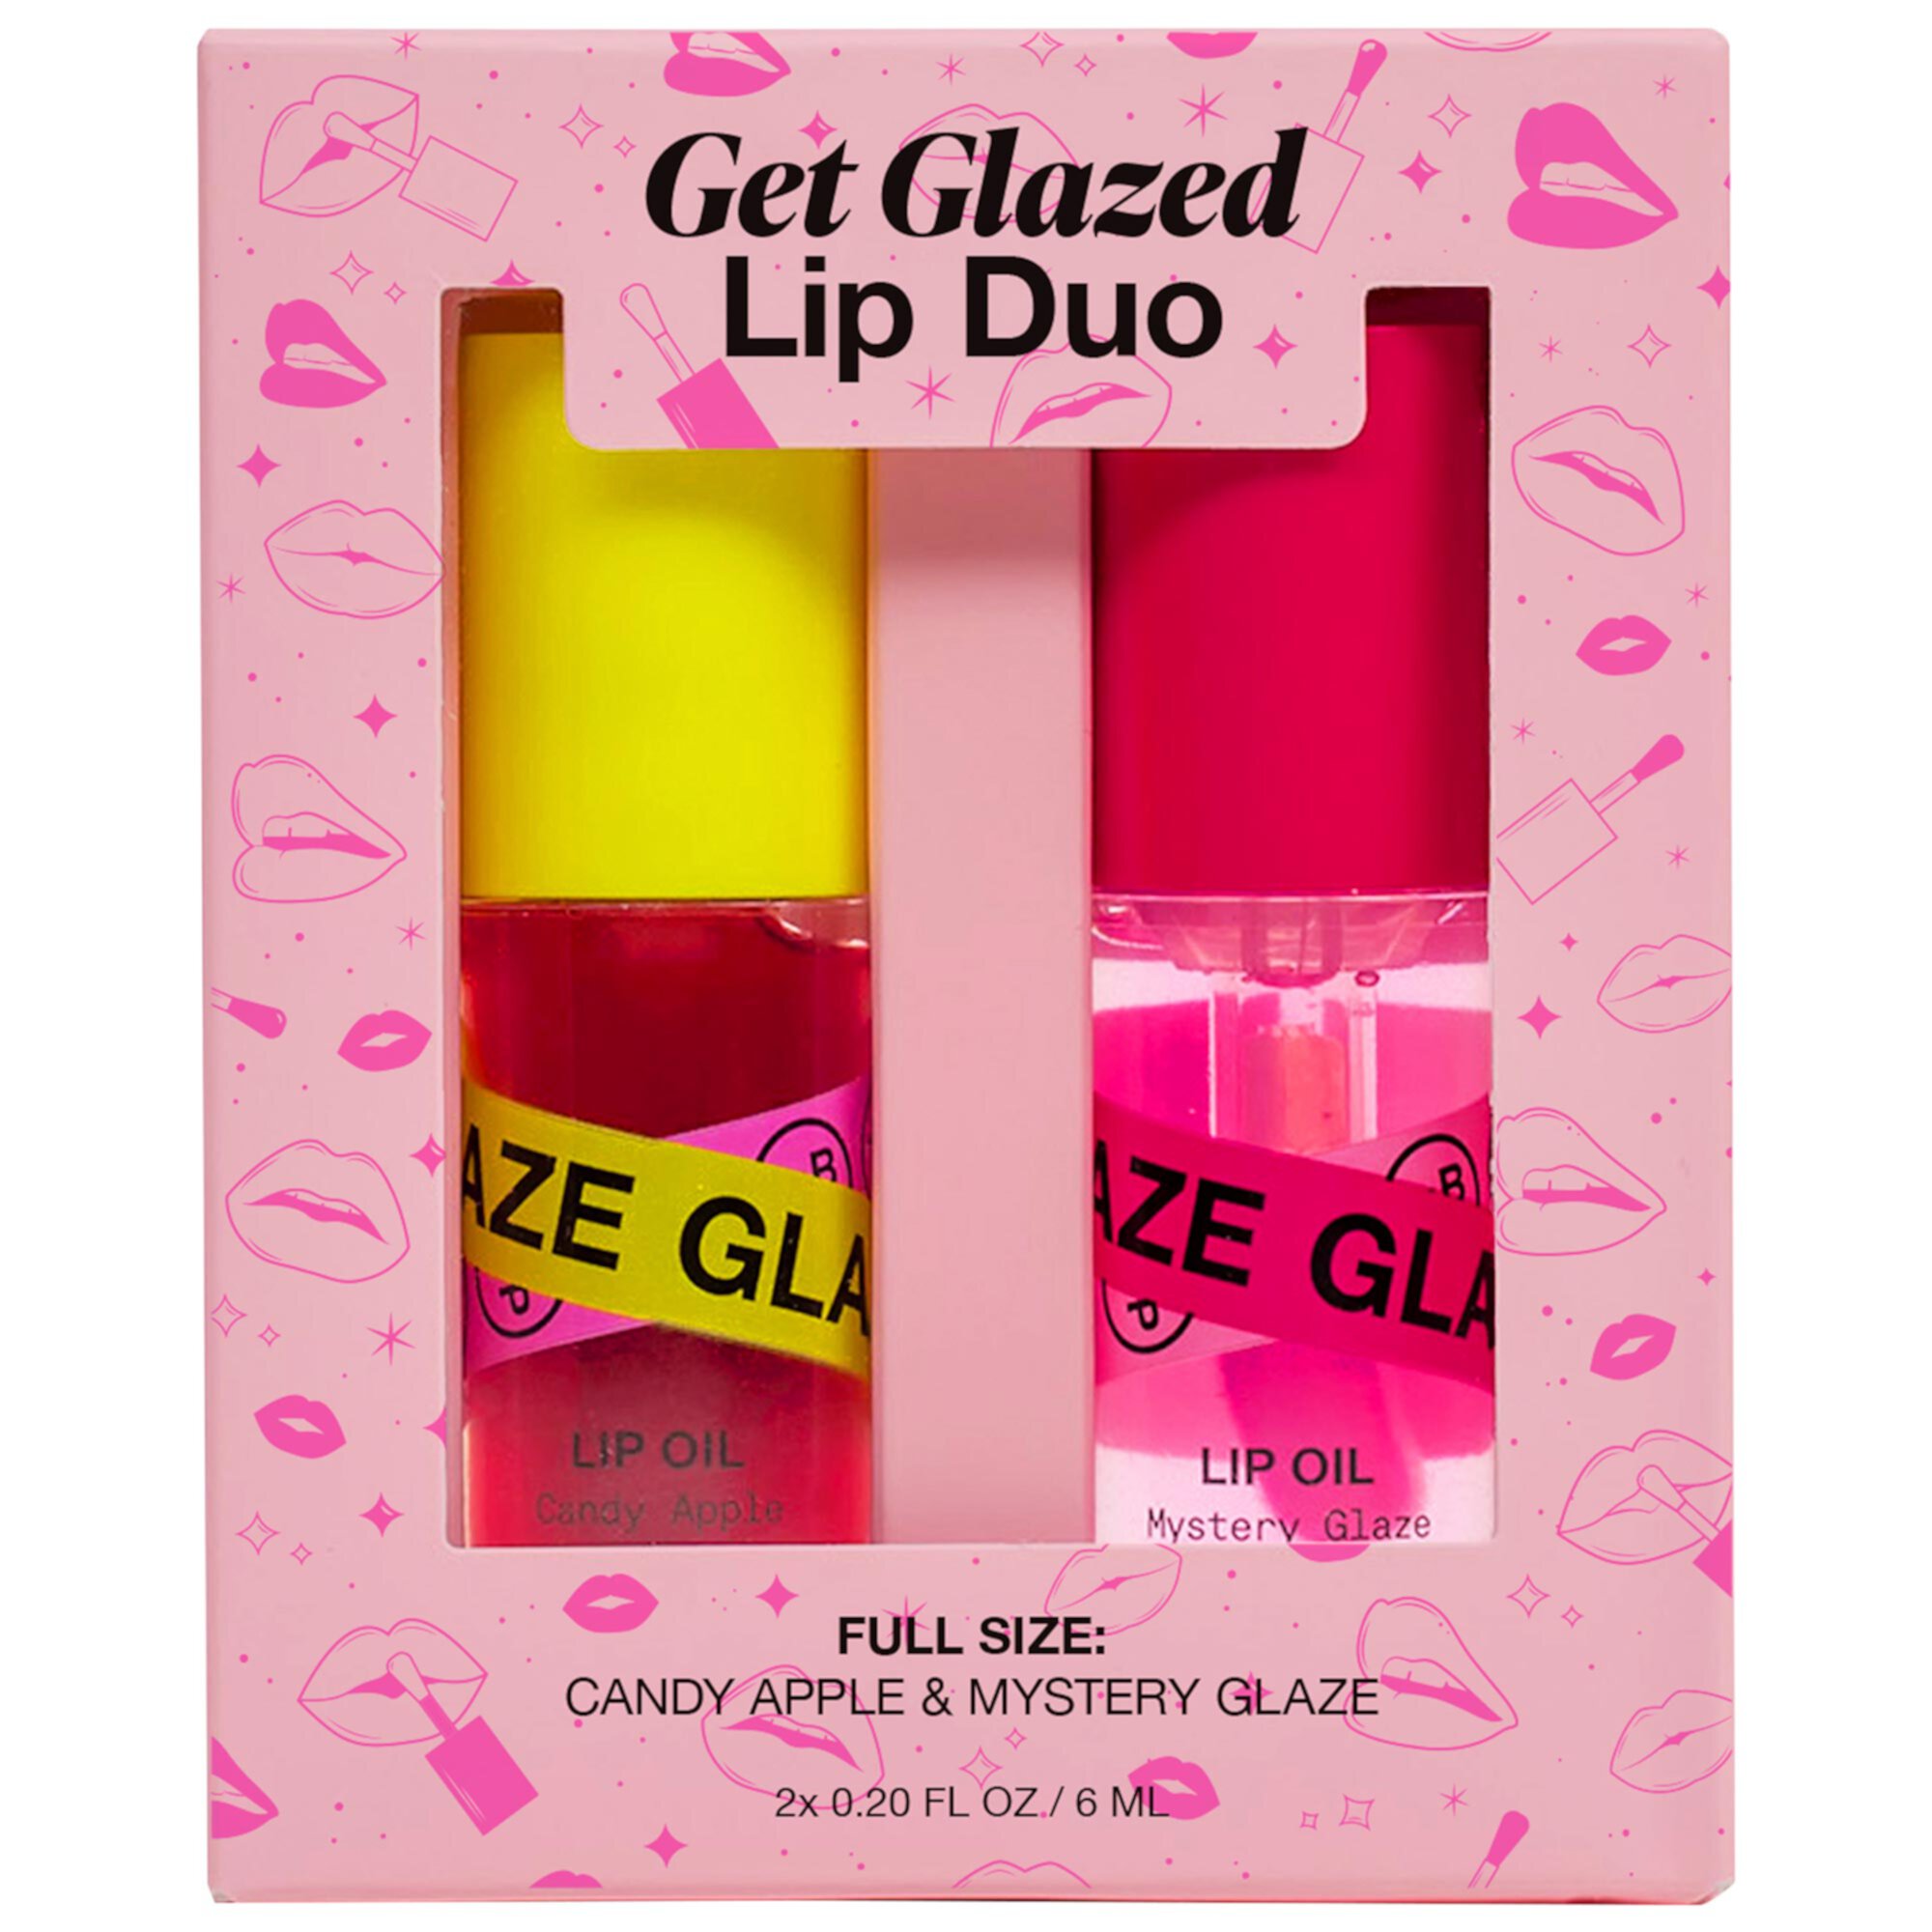 Get Glazed Lip Duo INNBEAUTY PROJECT